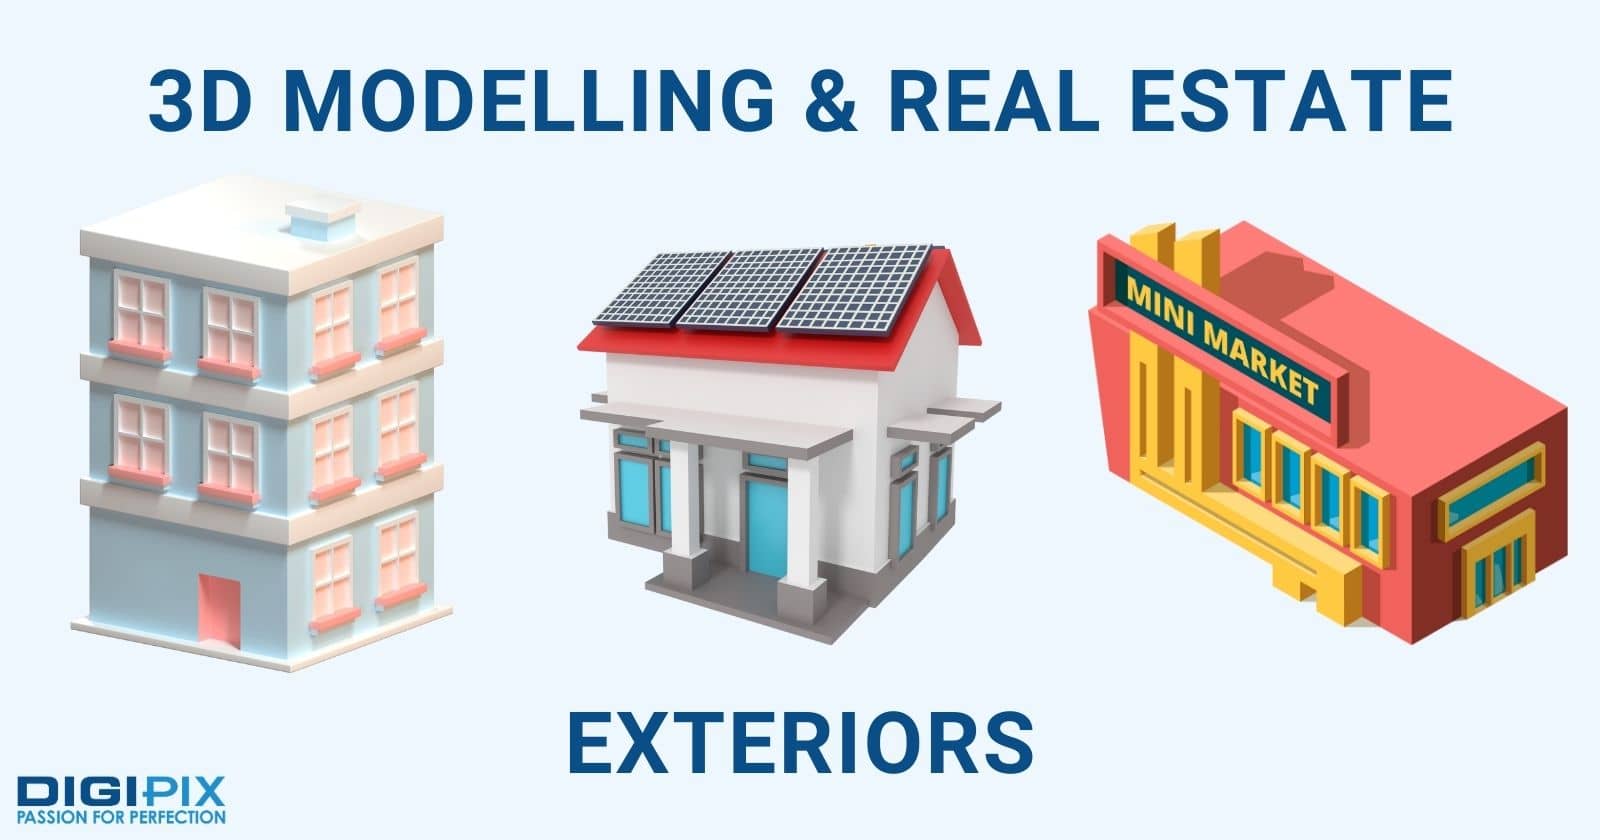 3D Modelling & Real Estate Exteriors digipix digipixinc.com